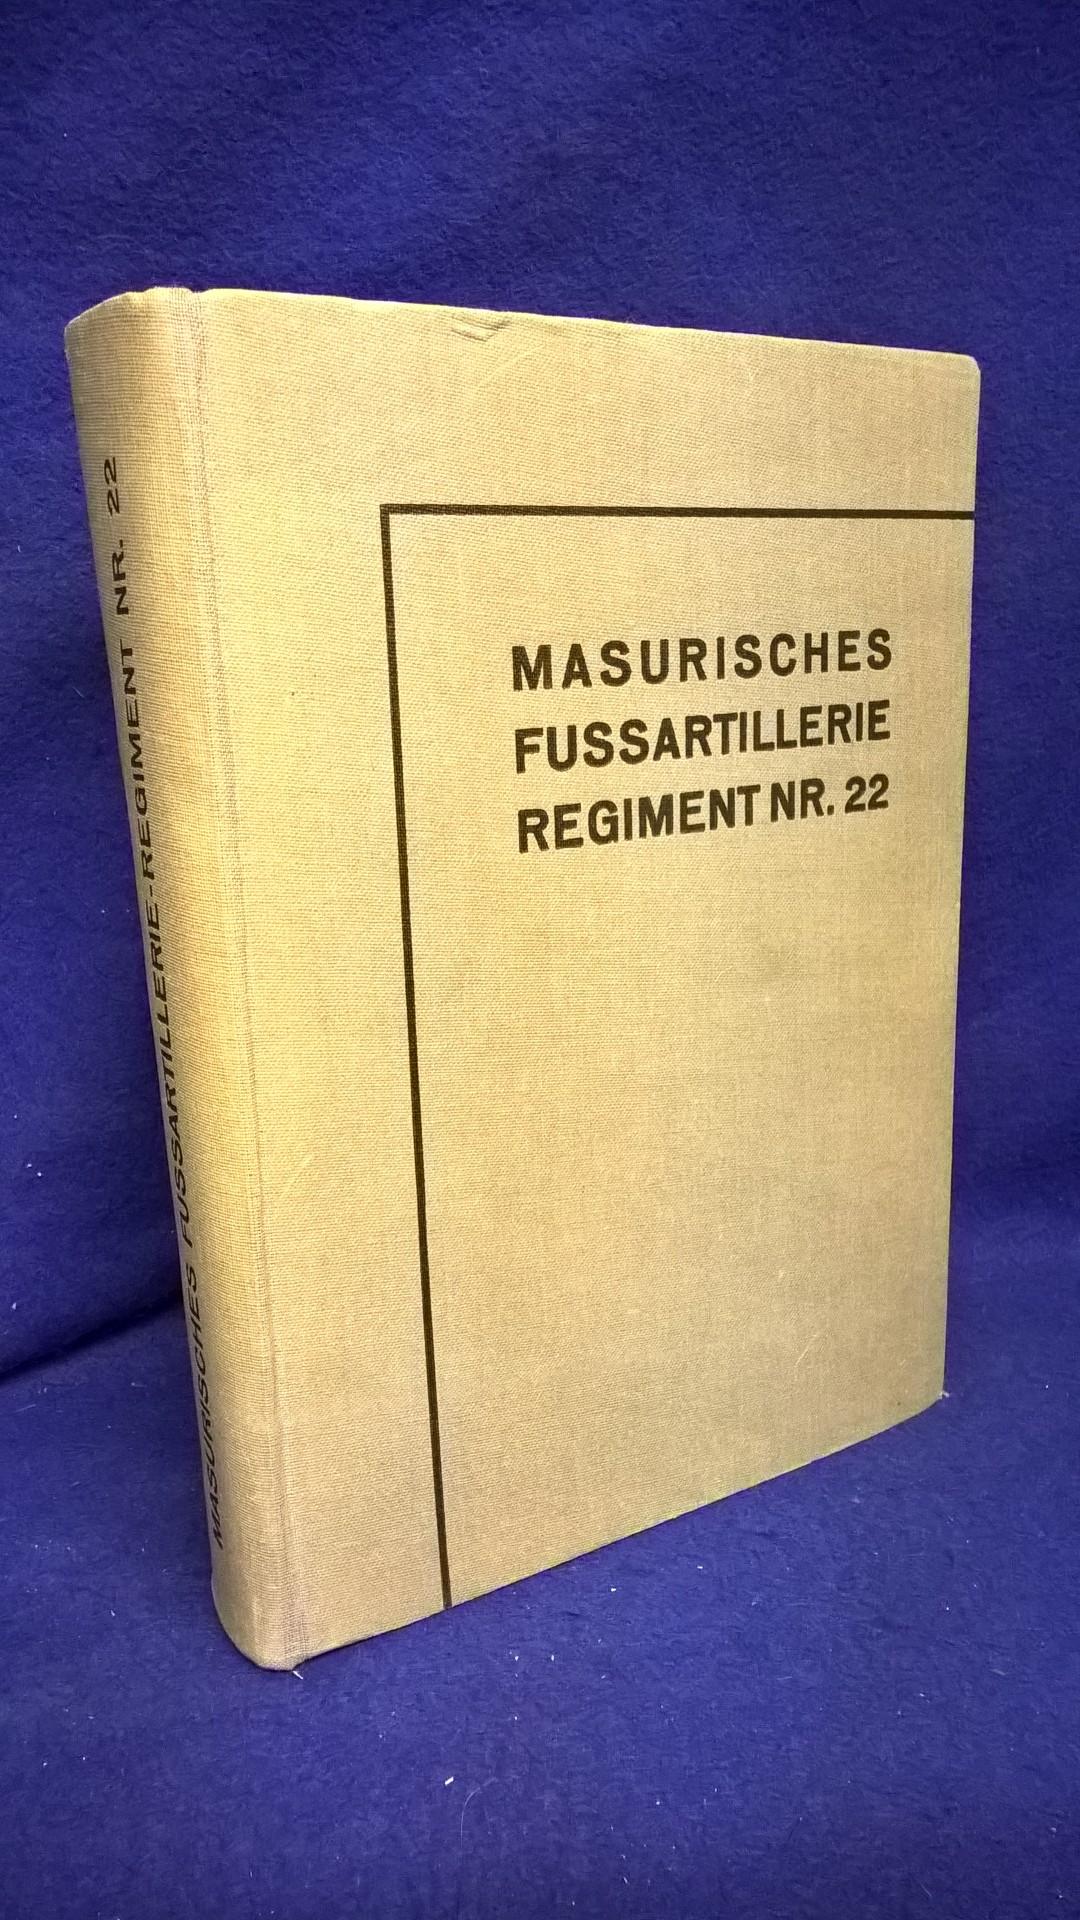 Geschichte des masurischen Fussartillerie-Regiments Nr.22,sowie die Geschichte der Reserve-Fussartillerie-Batterie 22 und des Reserve-Fussartillerie-Bataillons 22.